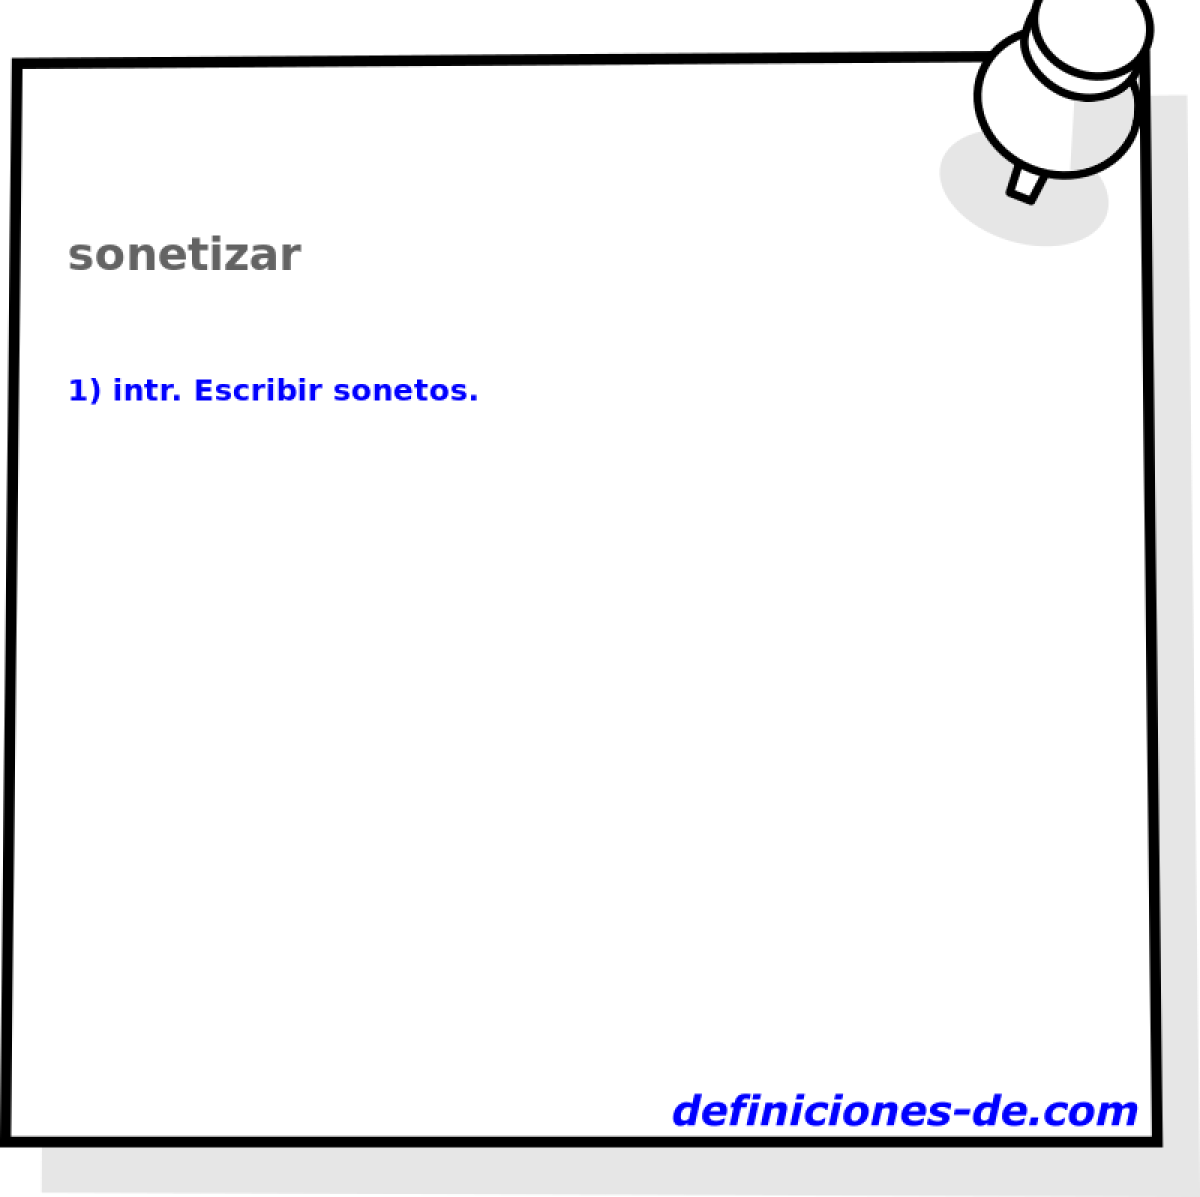 sonetizar 